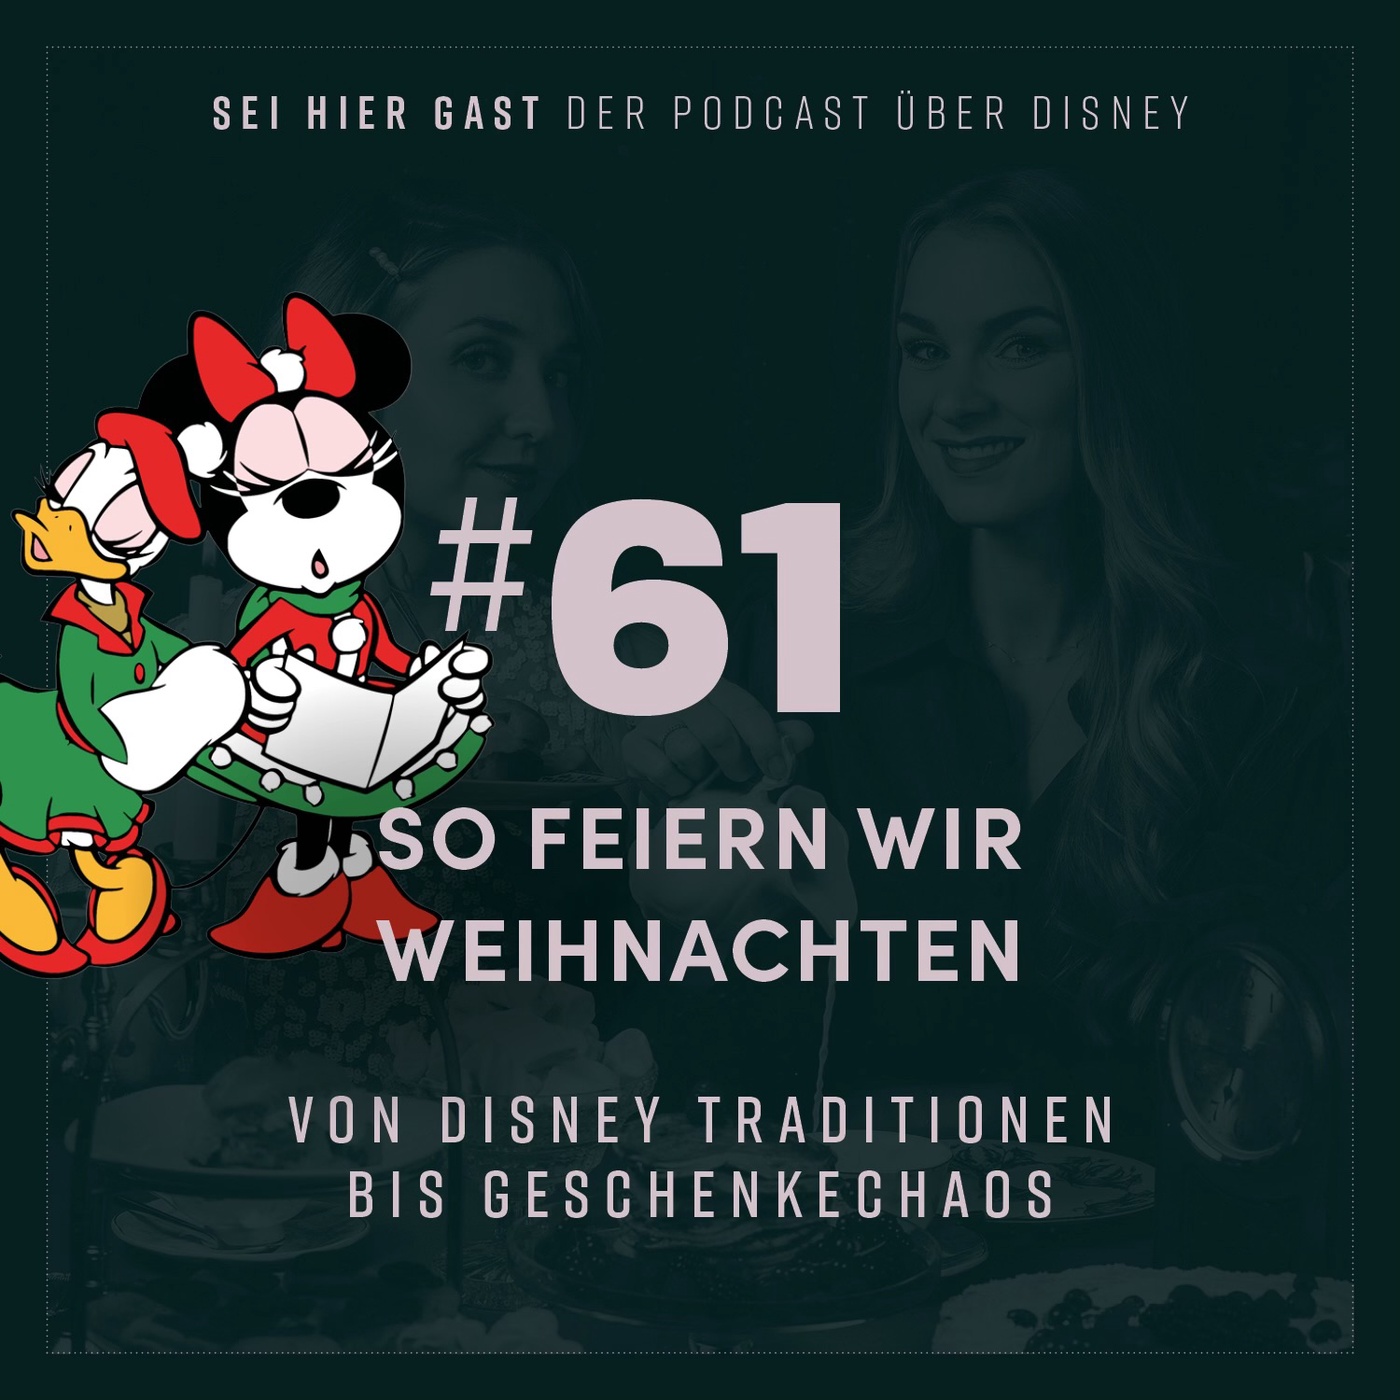 #61 So feiern wir Weihnachten I Von Disney Traditionen bis Geschenkechaos